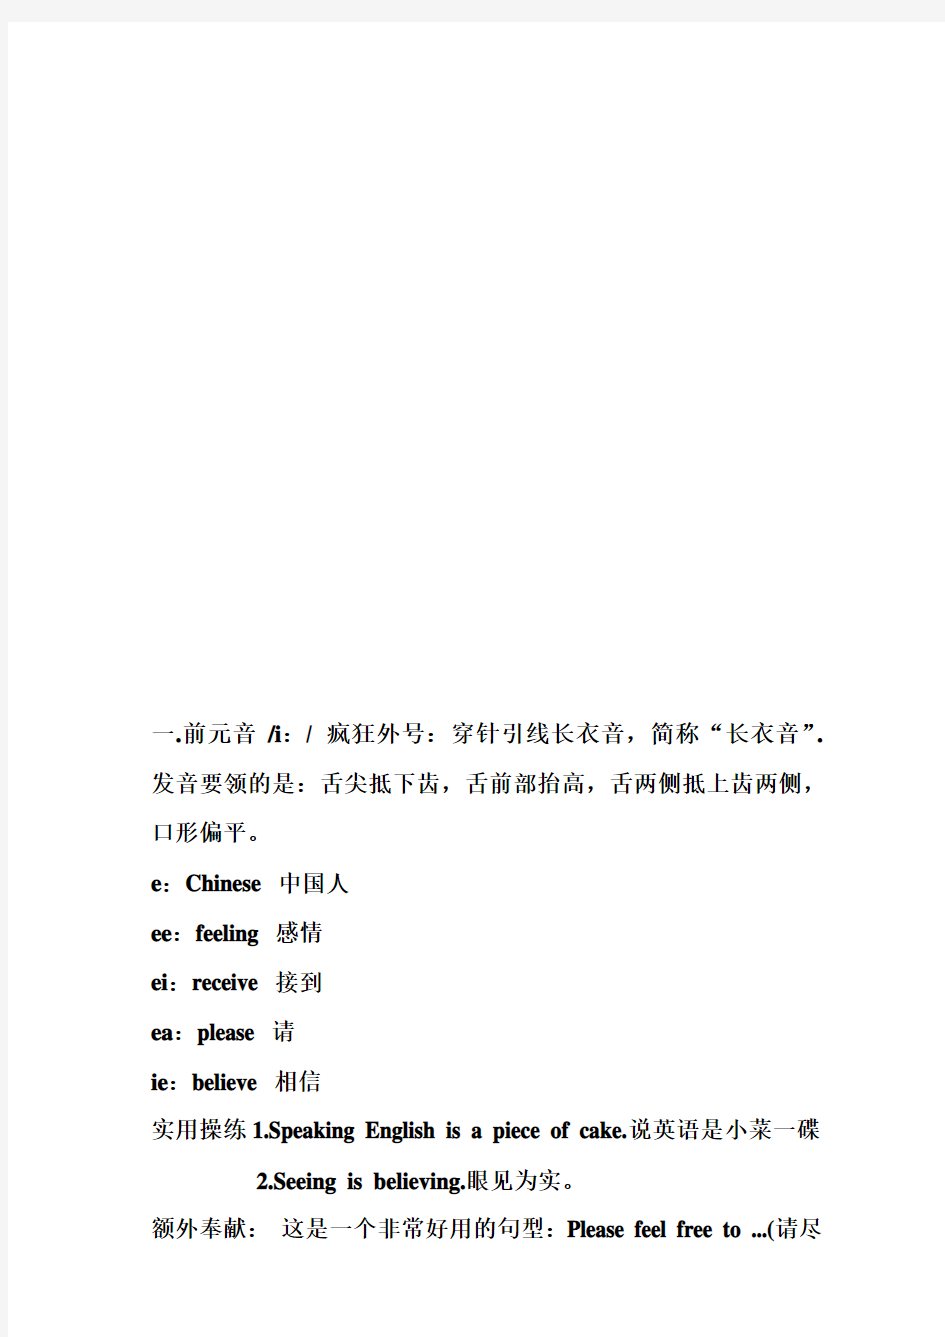 (完整版)【英语】48个国际音标表整理汇总,推荐文档